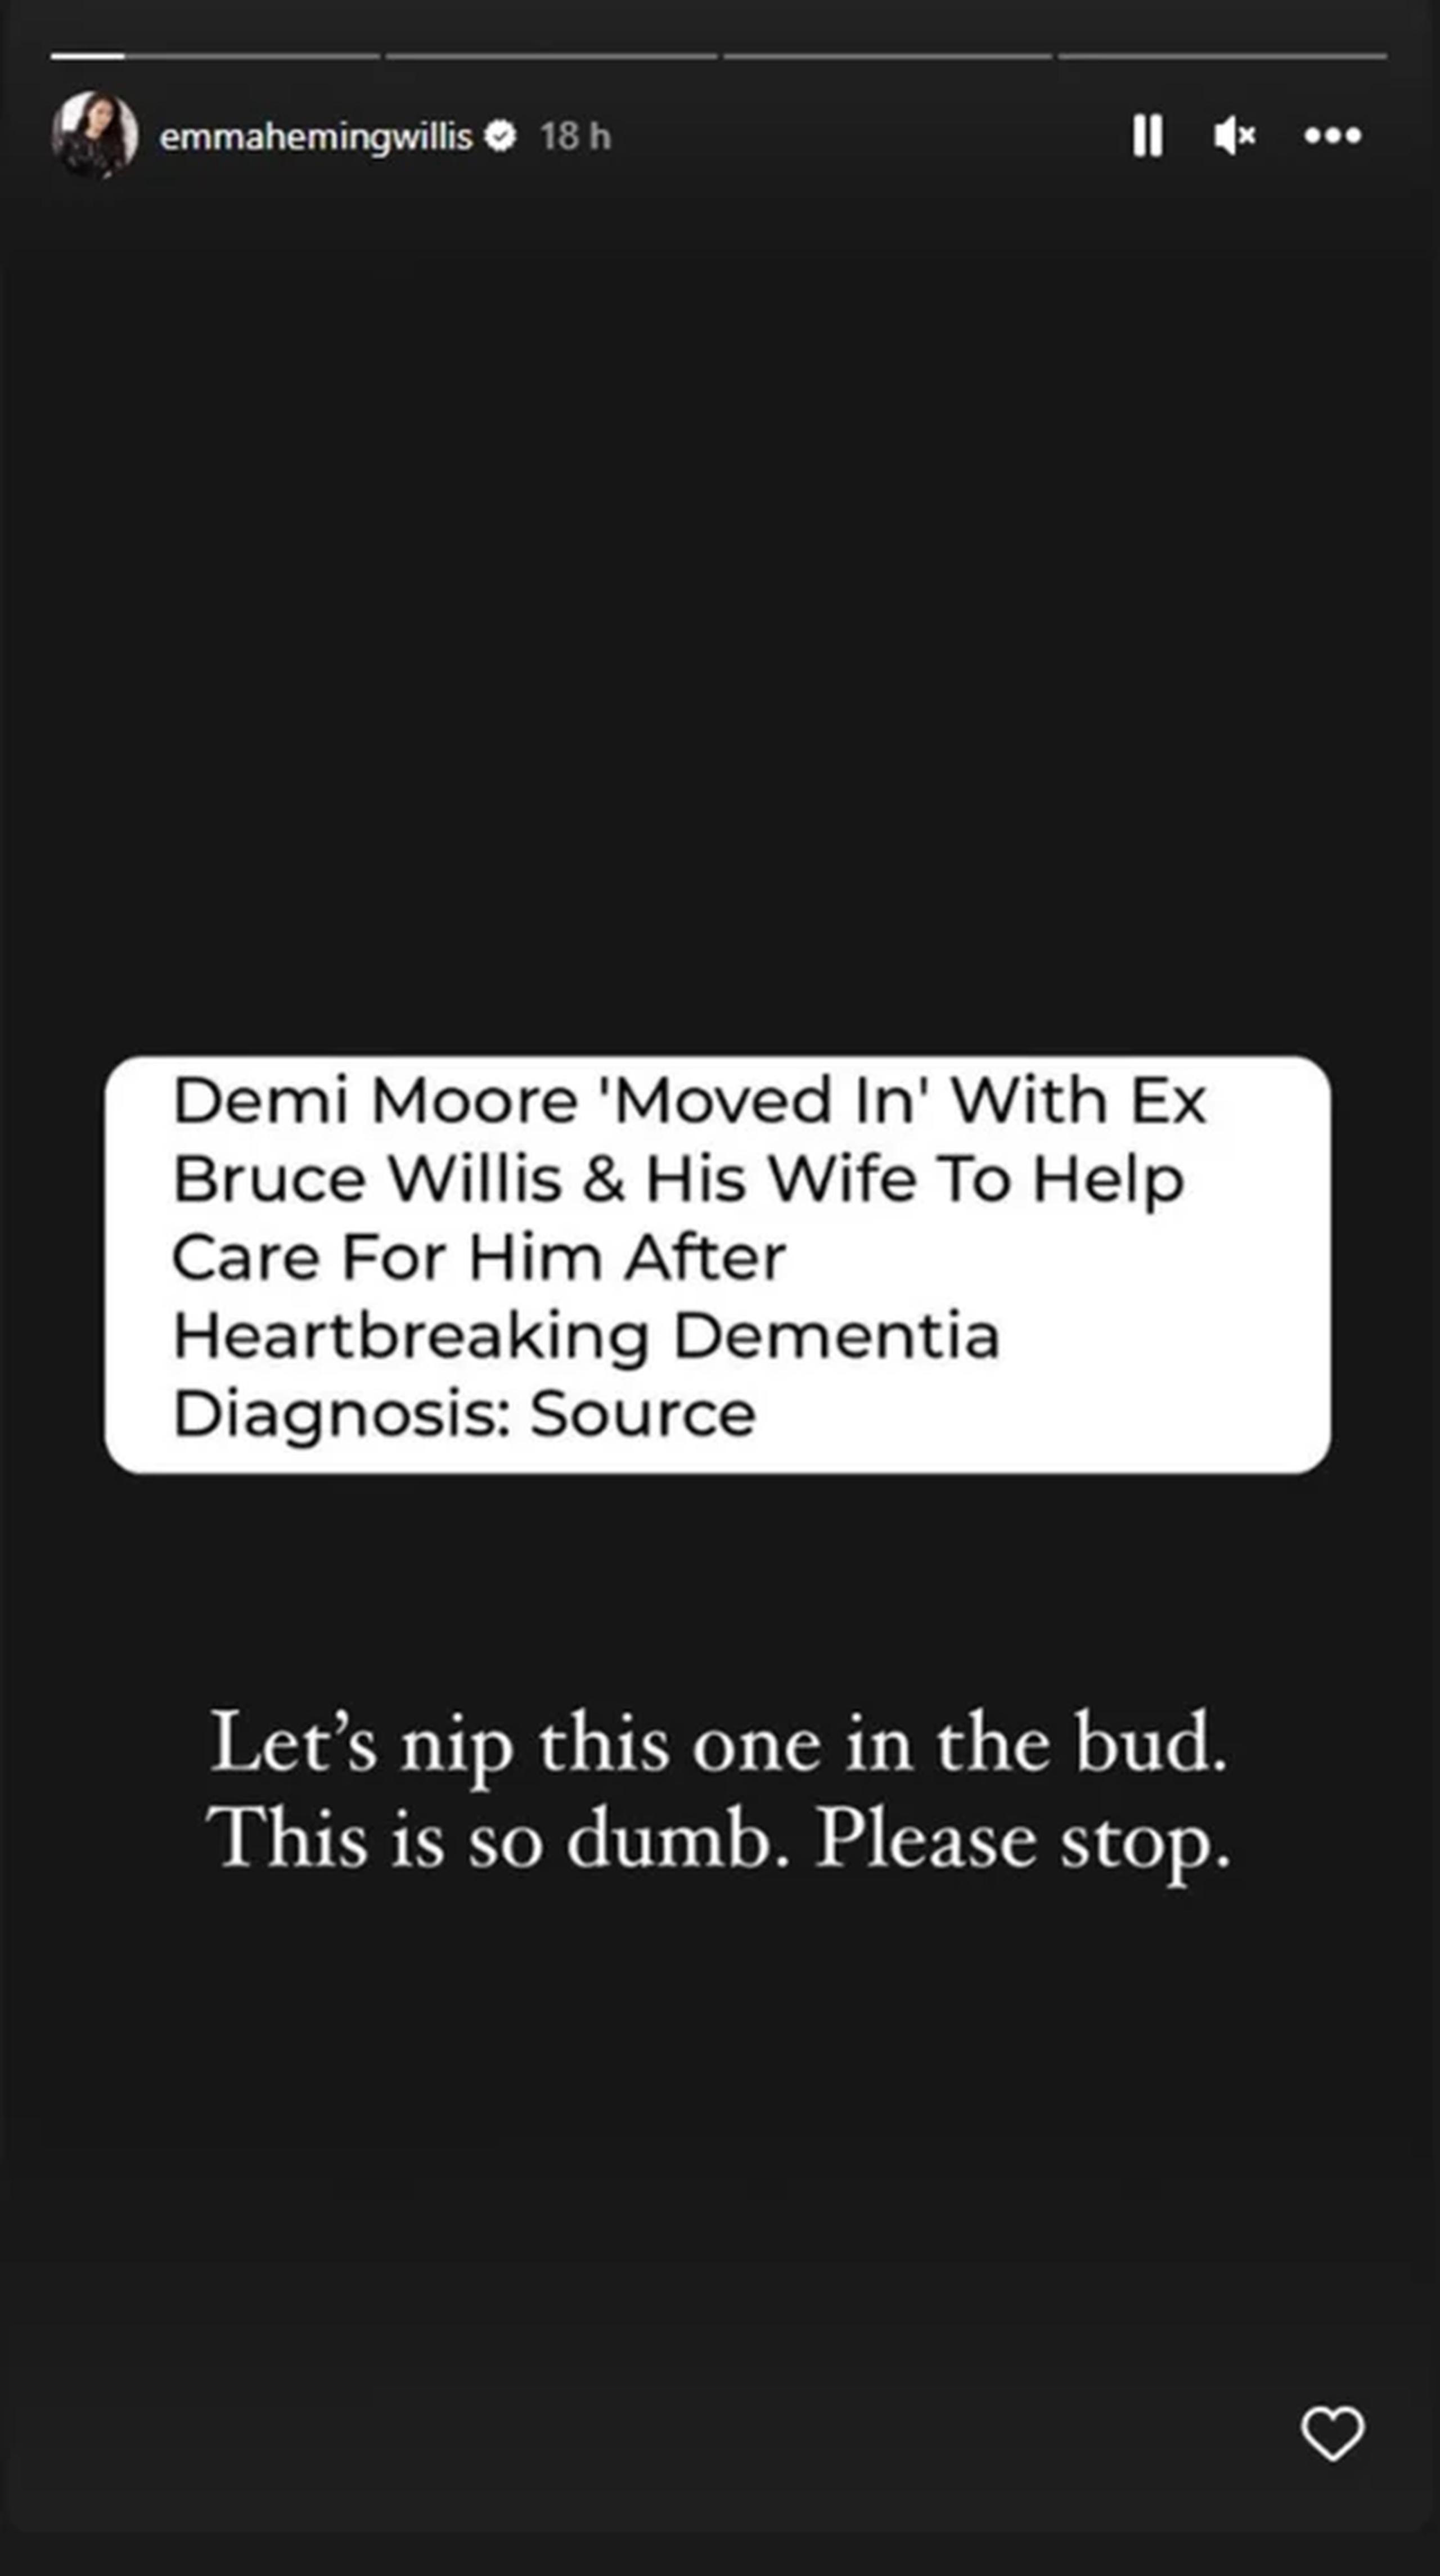 Emma Heming arremetió con la prensa tras reportar que Demi Moore, exesposa de Bruce Willis, reside con ellos tras su diagnóstico de salud.